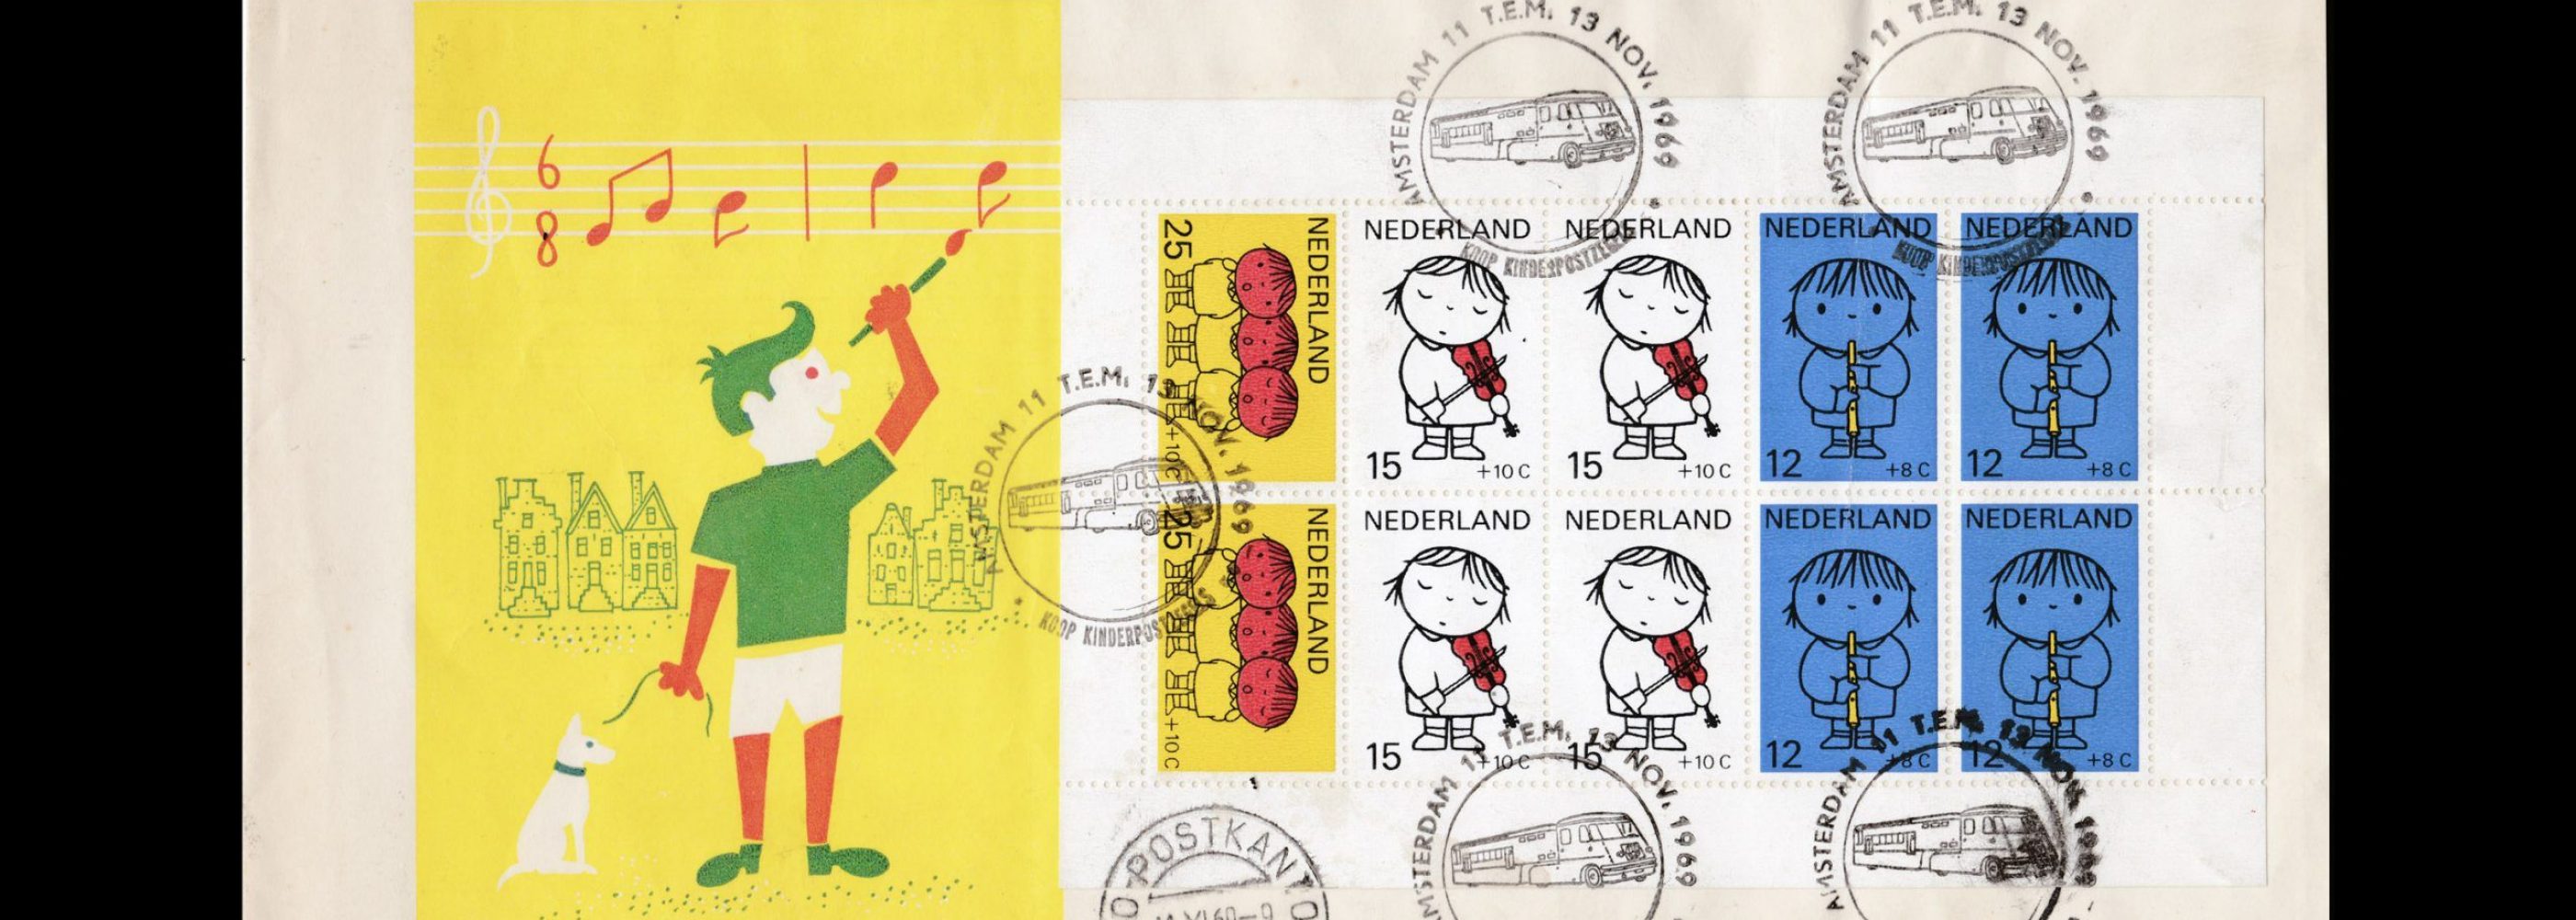 Child Welfare, Netherlands Stamps, 1969 designed by Dick Bruna